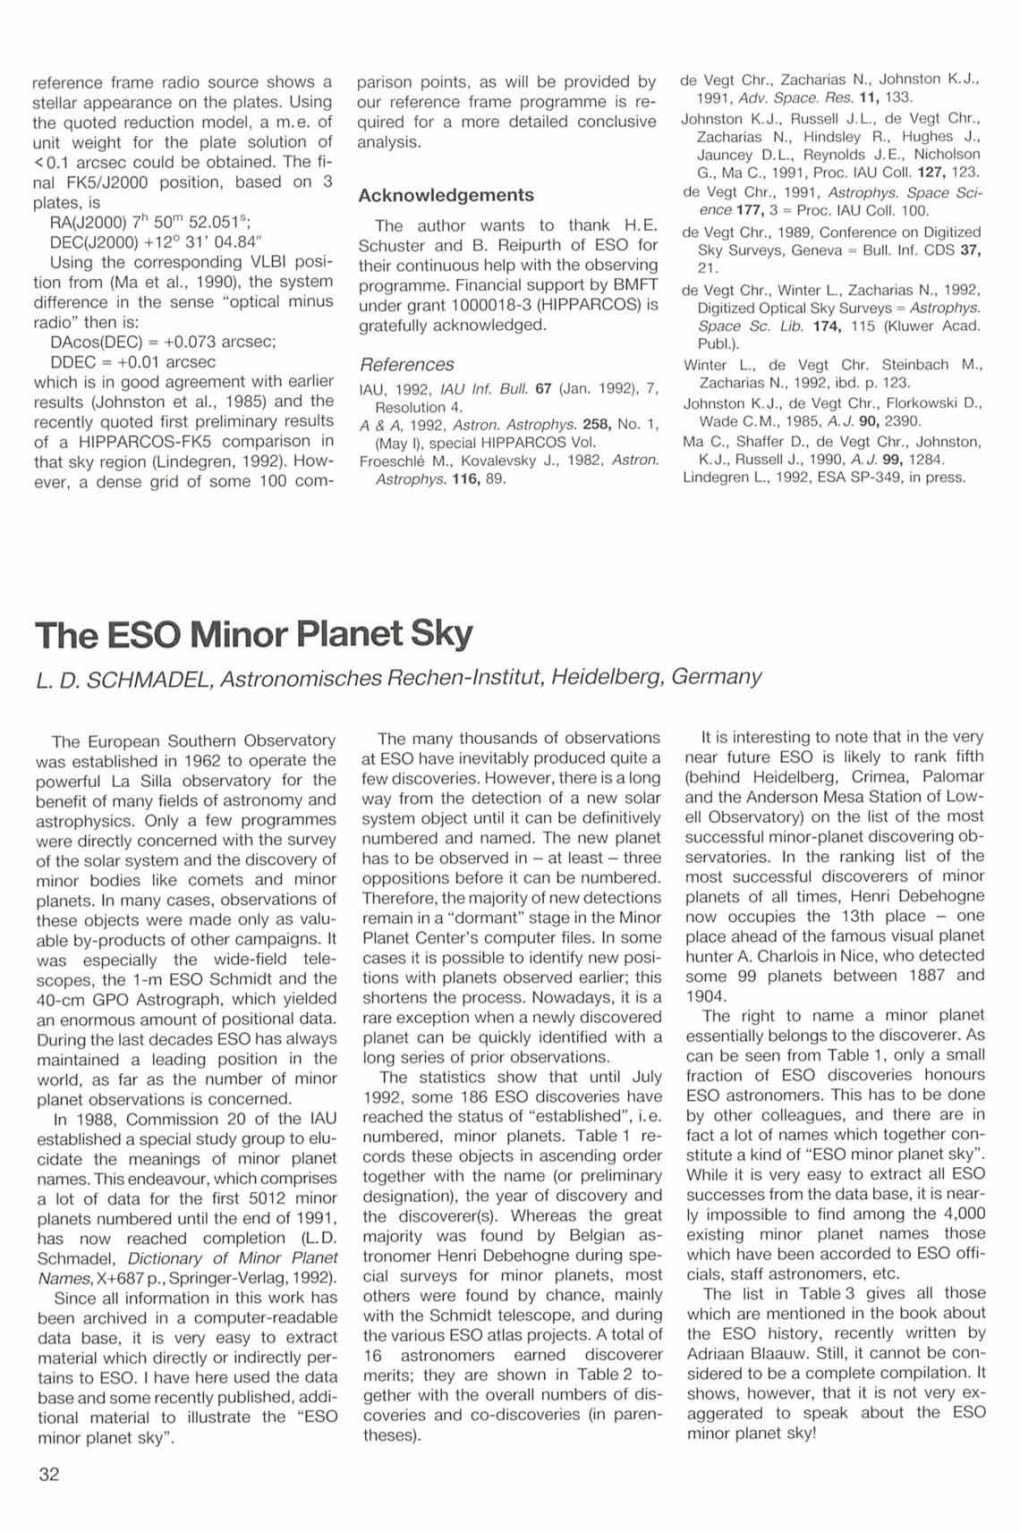 The ESO Minor Planet Sky L